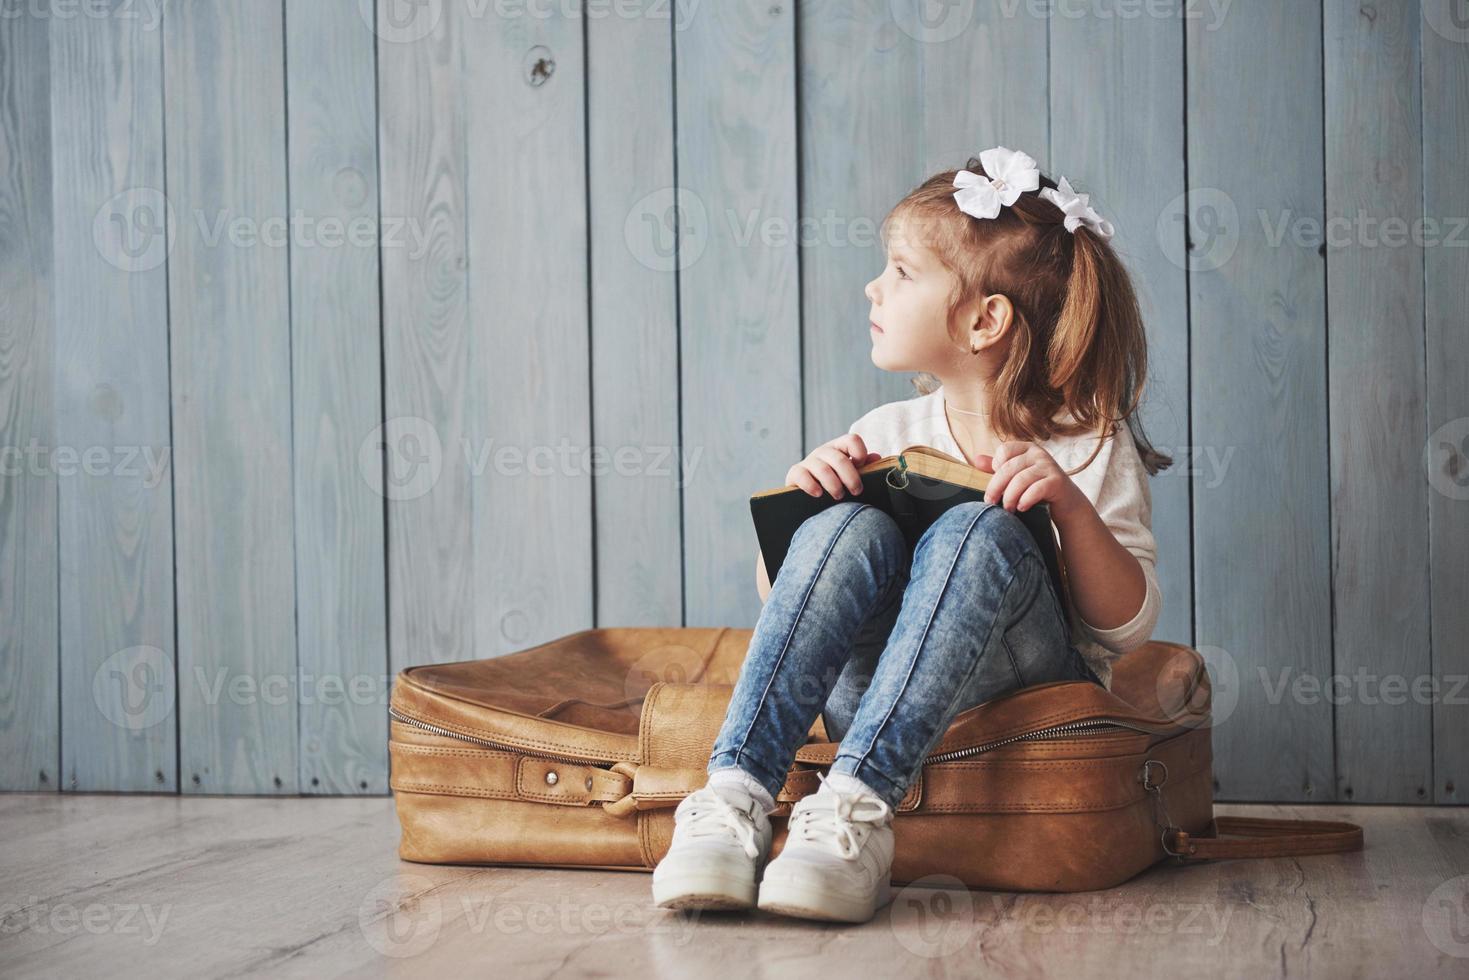 prêt à grand voyage. heureuse petite fille lisant un livre intéressant portant une grosse mallette et souriante. concept de voyage, de liberté et d'imagination photo